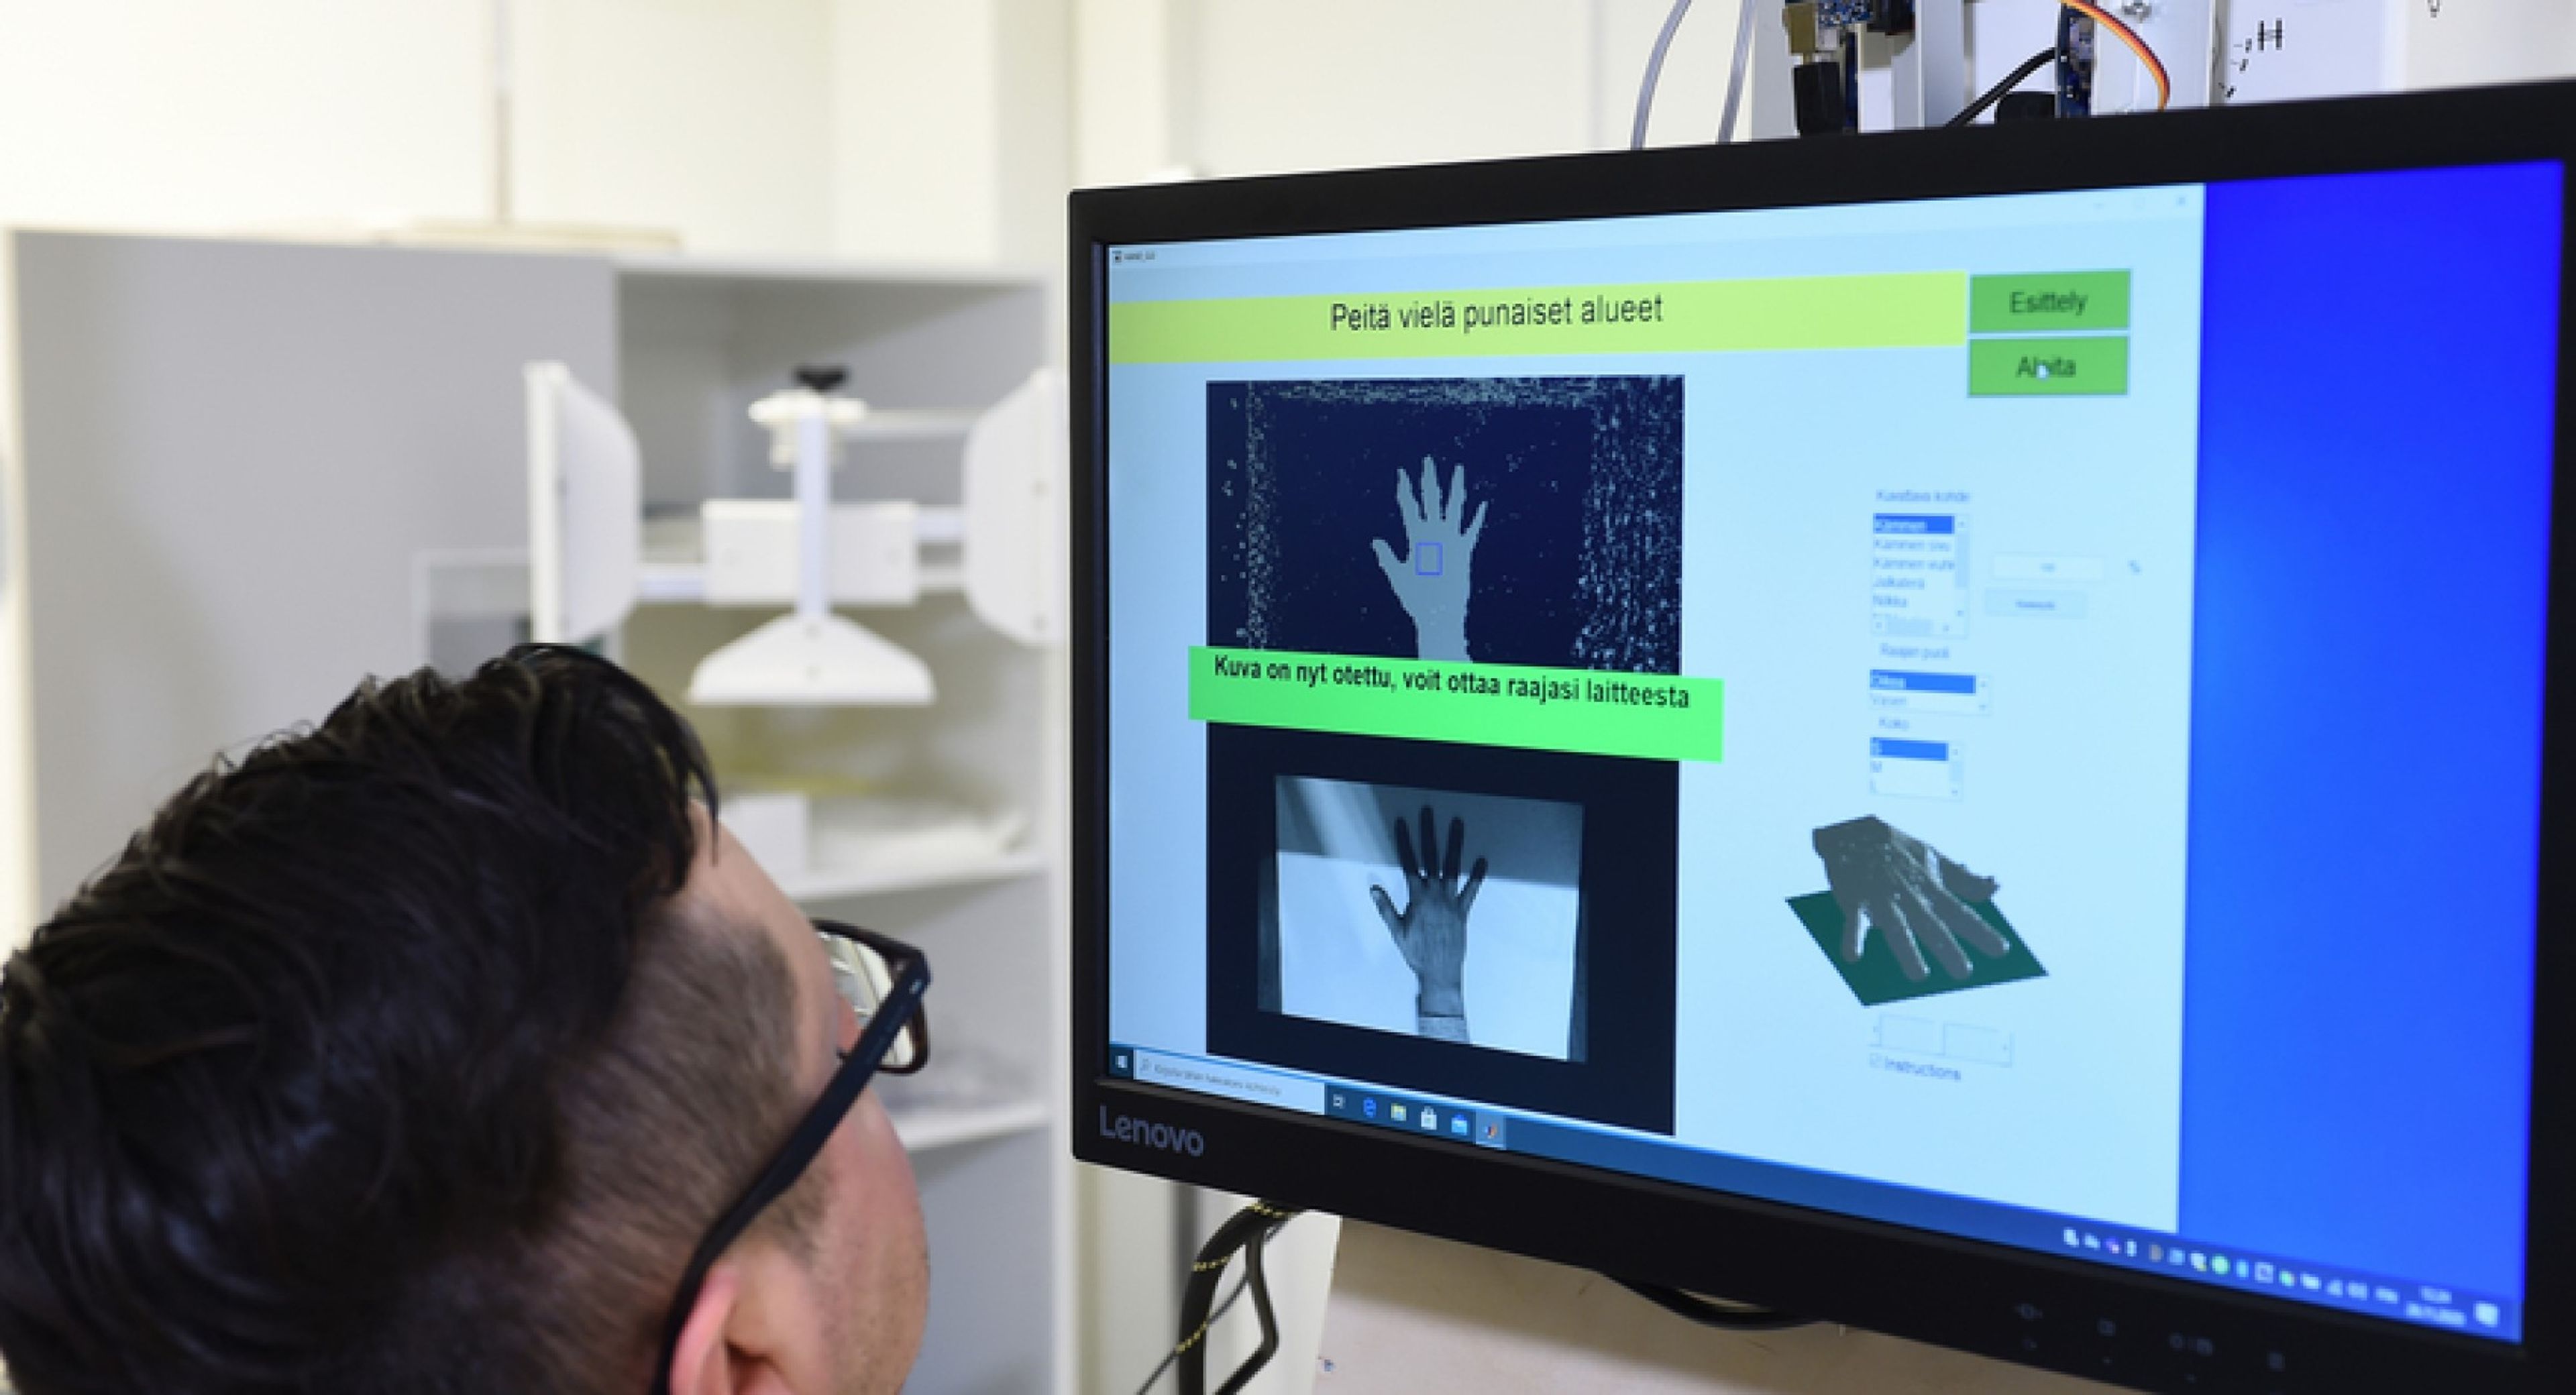 Estos investigadores proponen una máquina de rayos X "portátil" para autodiagnósticos